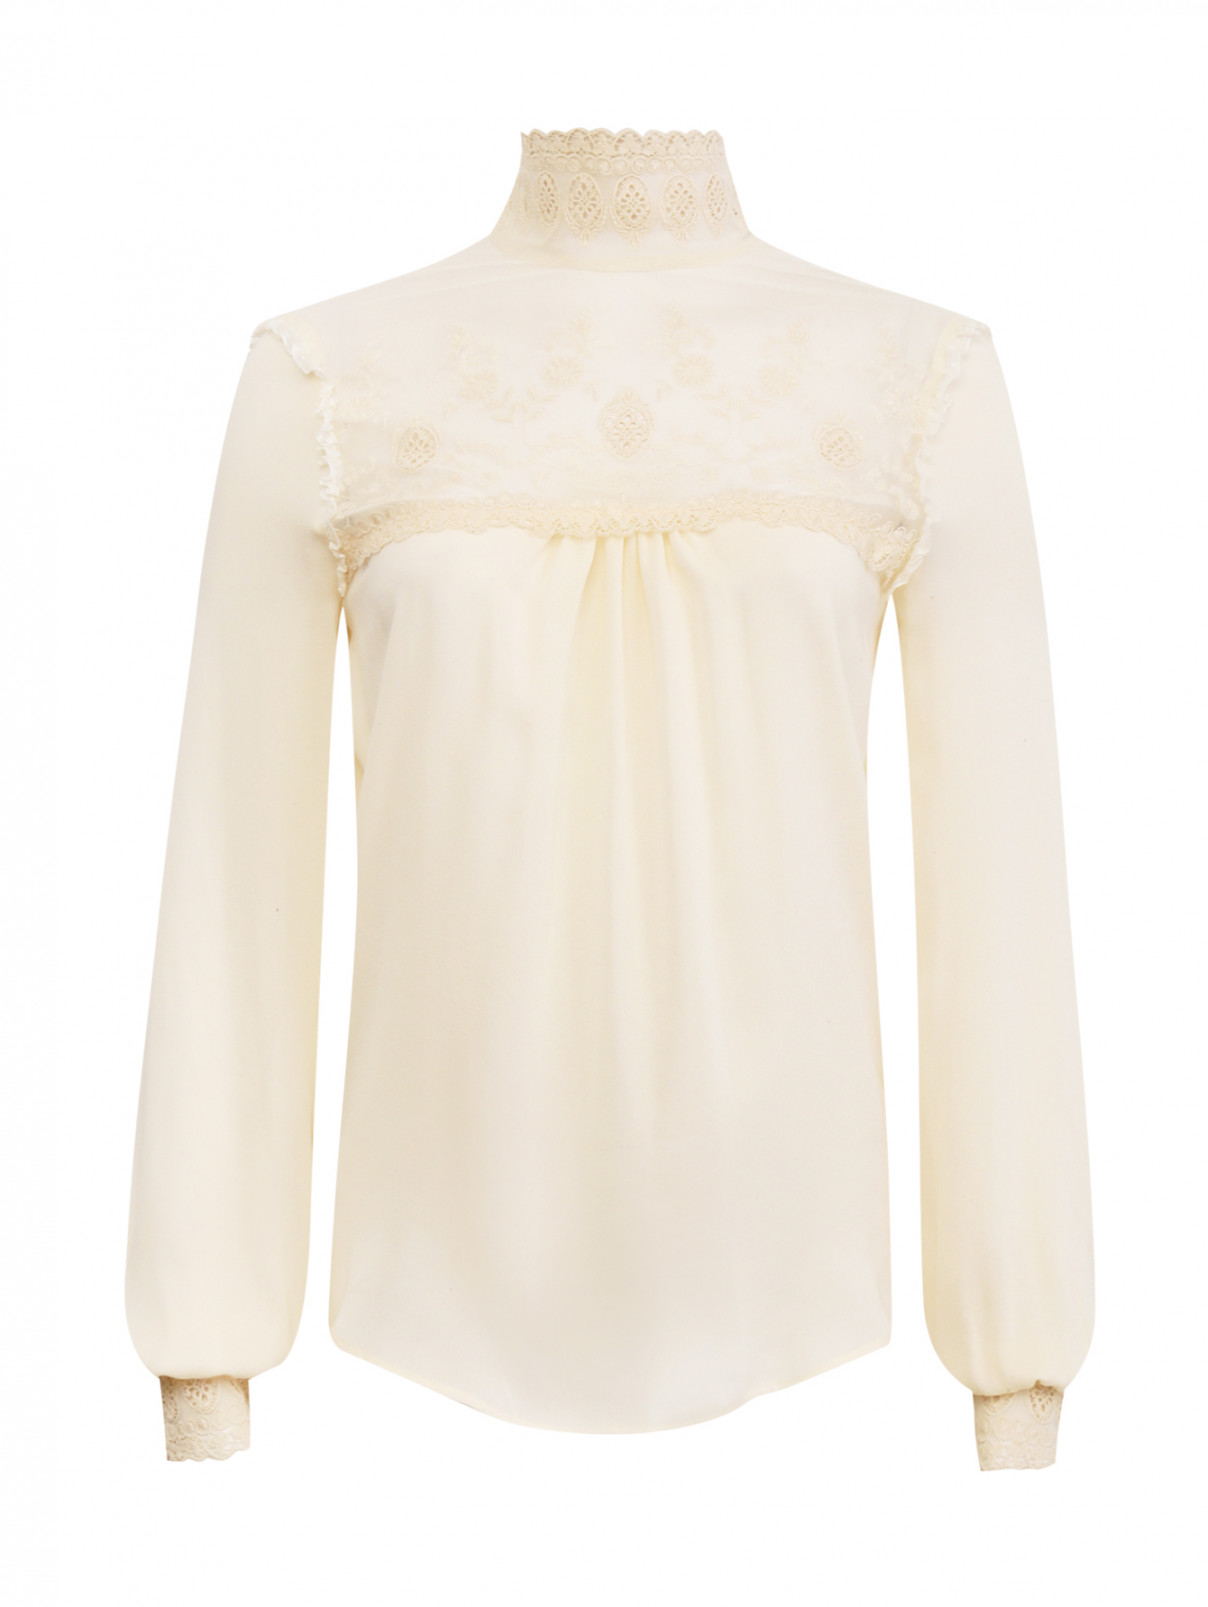 Блуза из шелка с кружевной вставкой Veronique Branquinho  –  Общий вид  – Цвет:  Белый